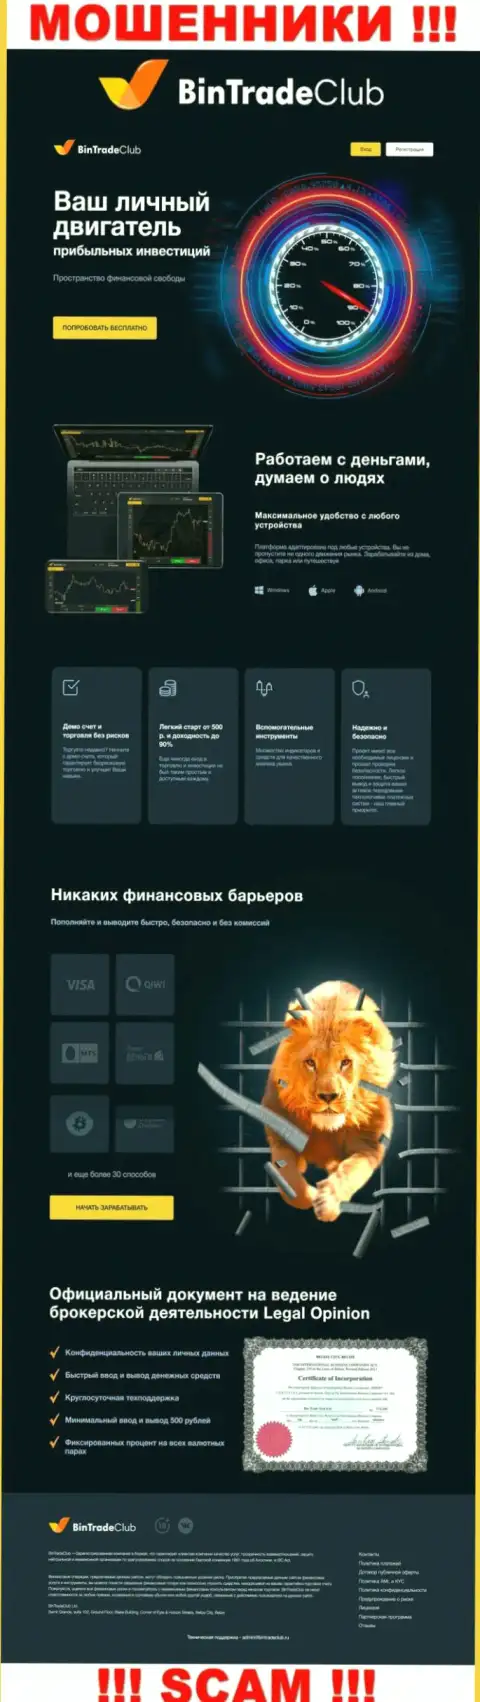 Официальная web-страничка мошеннического проекта BinTradeClub Ru